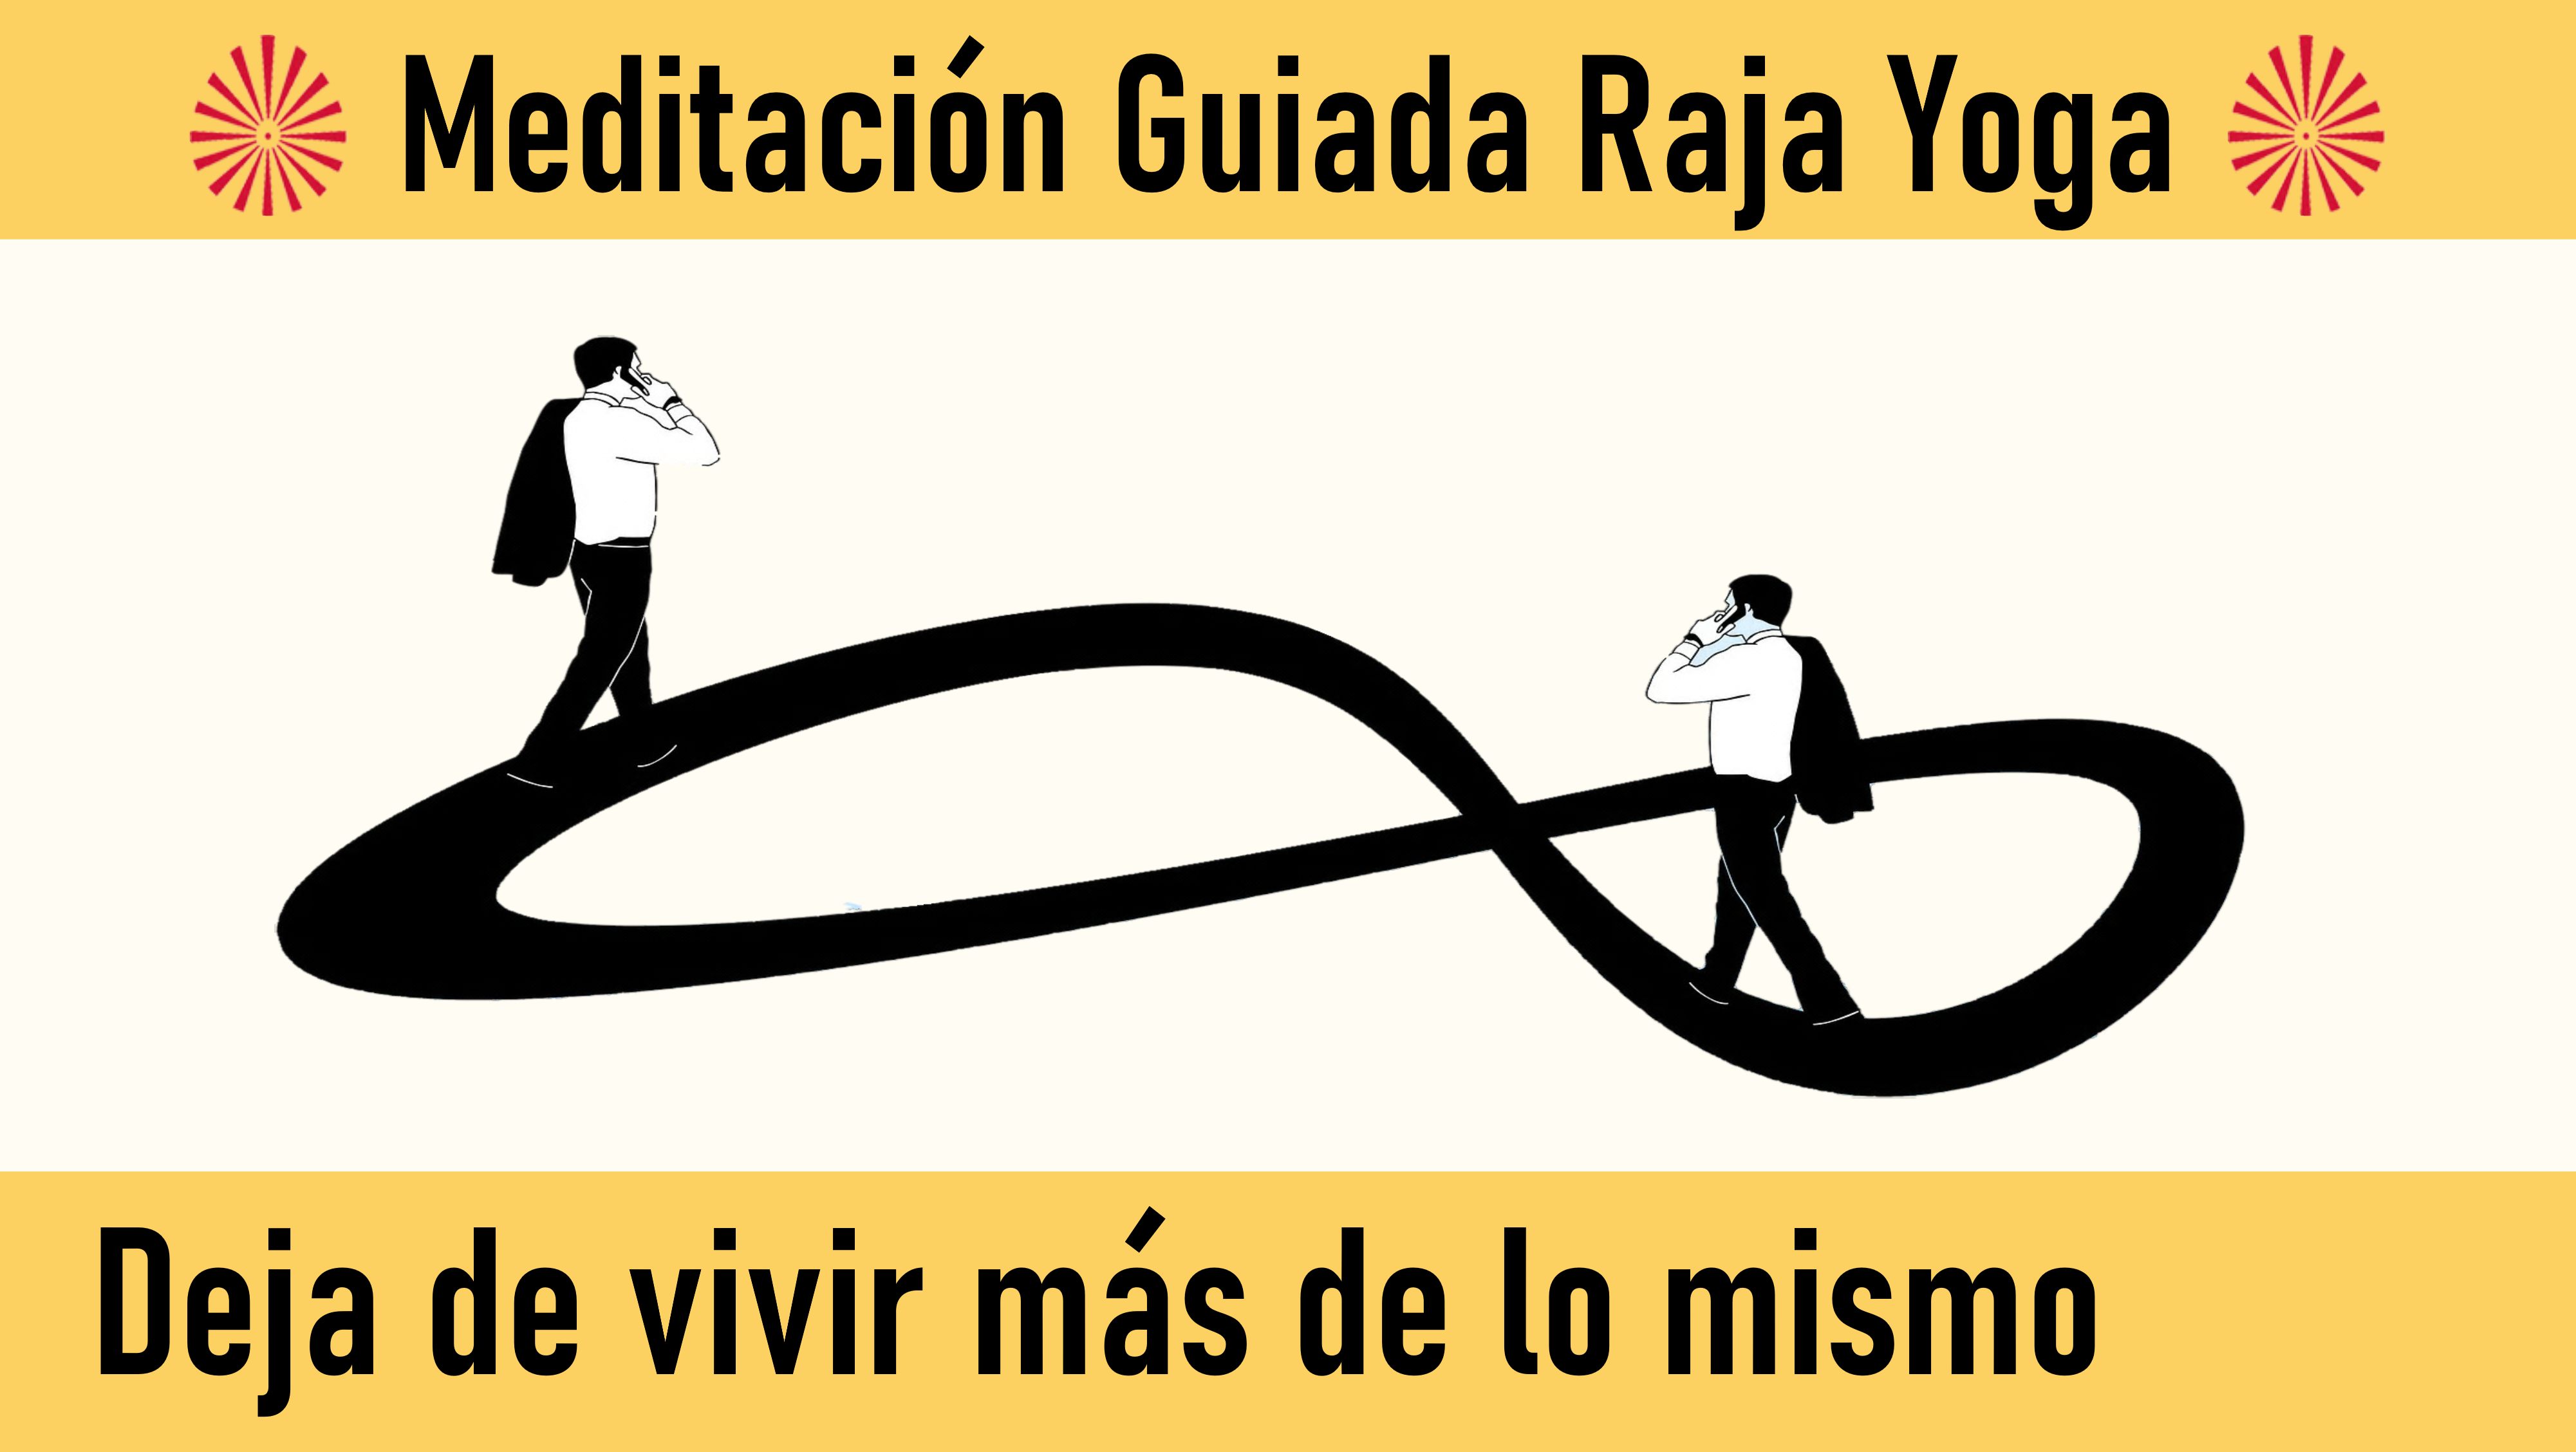 Meditación Raja Yoga: Deja de vivir mas de lo mismo (3 Agosto 2020) On-line desde Madrid